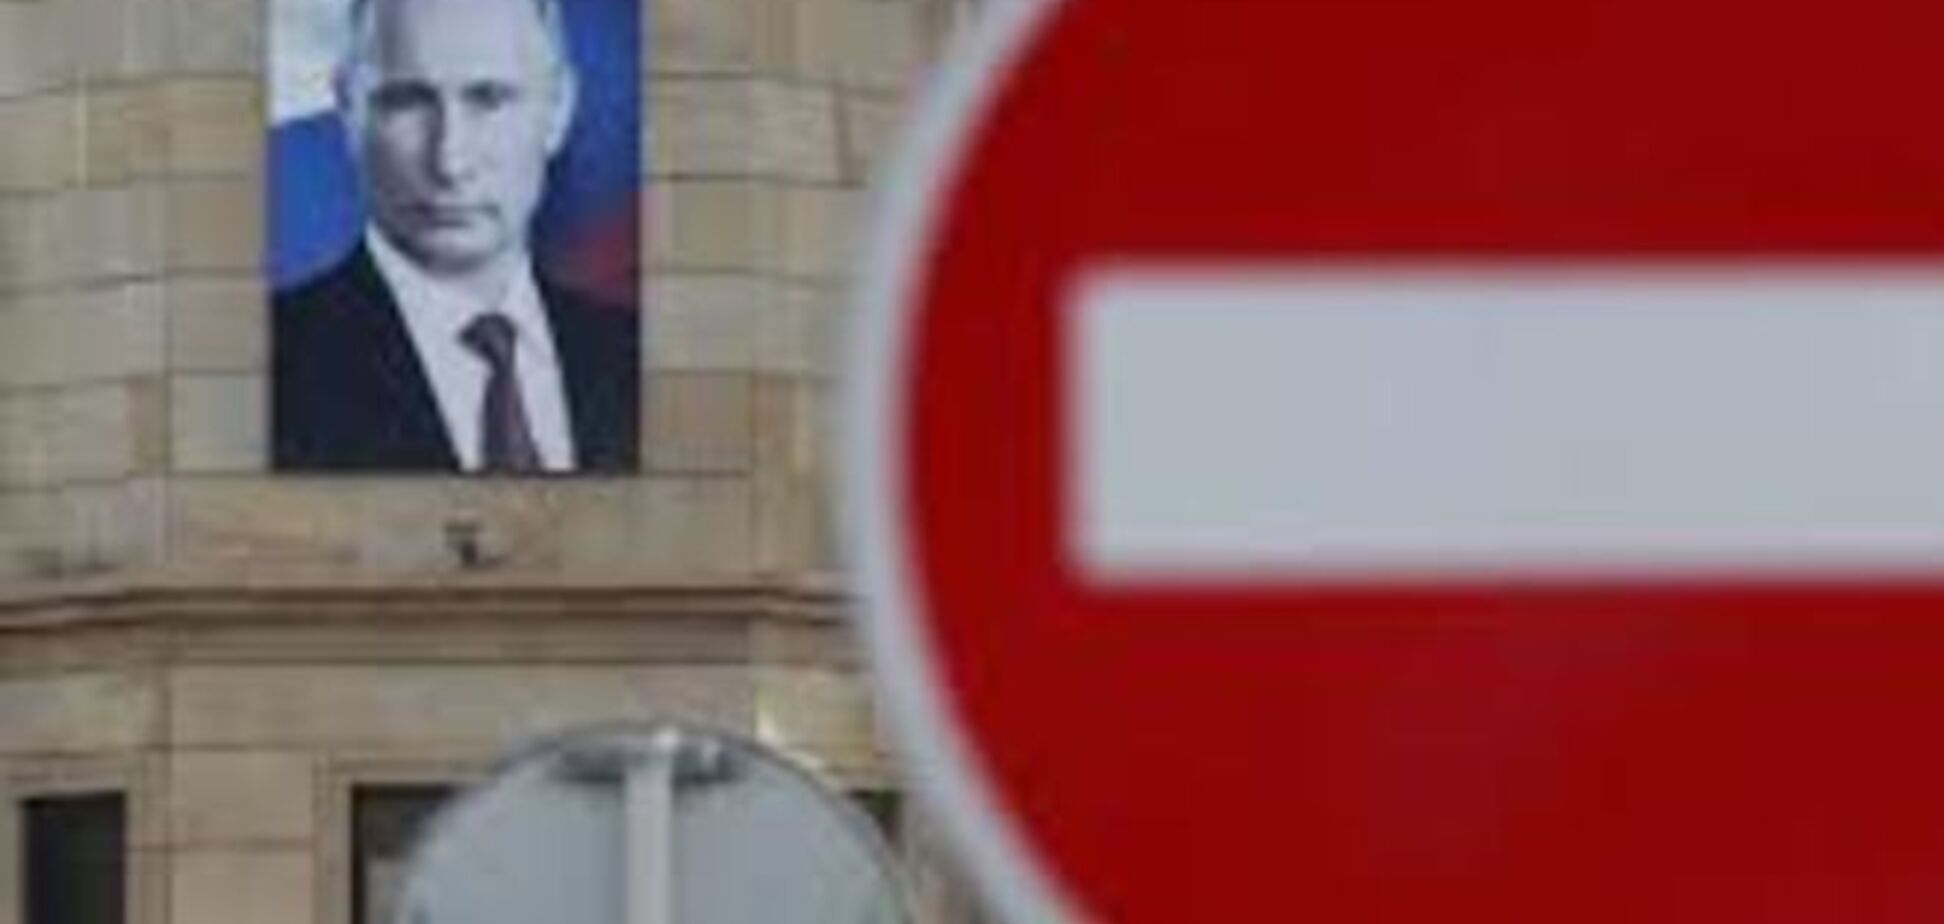 Франция с возмущением отменила визит своих депутатов в Россию